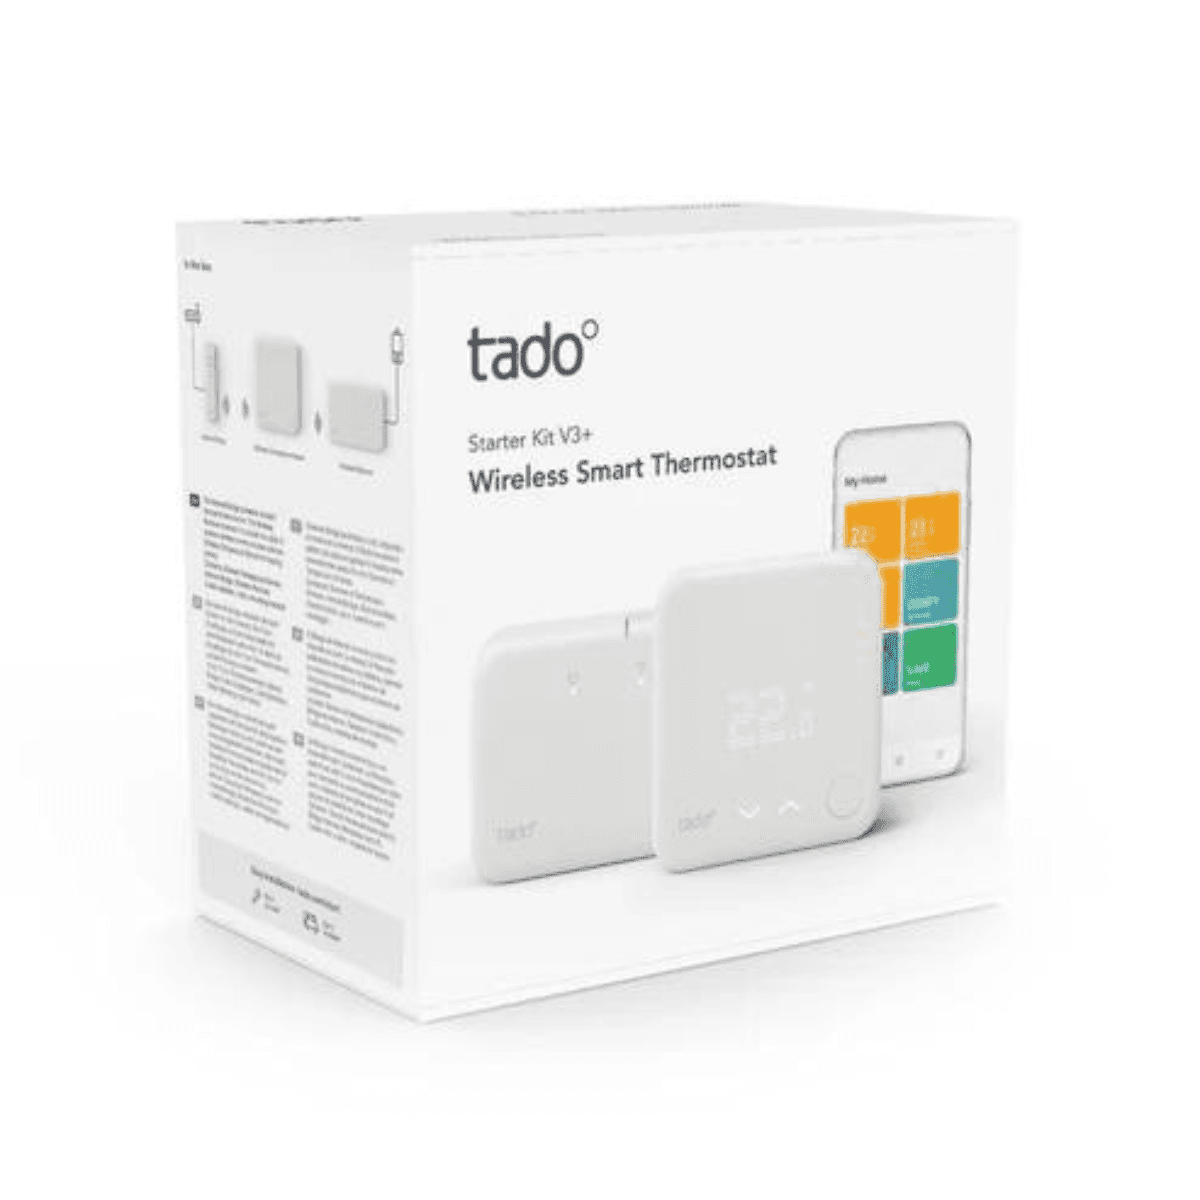 Kit de inicio termostato inteligente inalámbrico TADO V3+ con WiFi y APP con referencia ST KIT W V3 + de la marca TADO